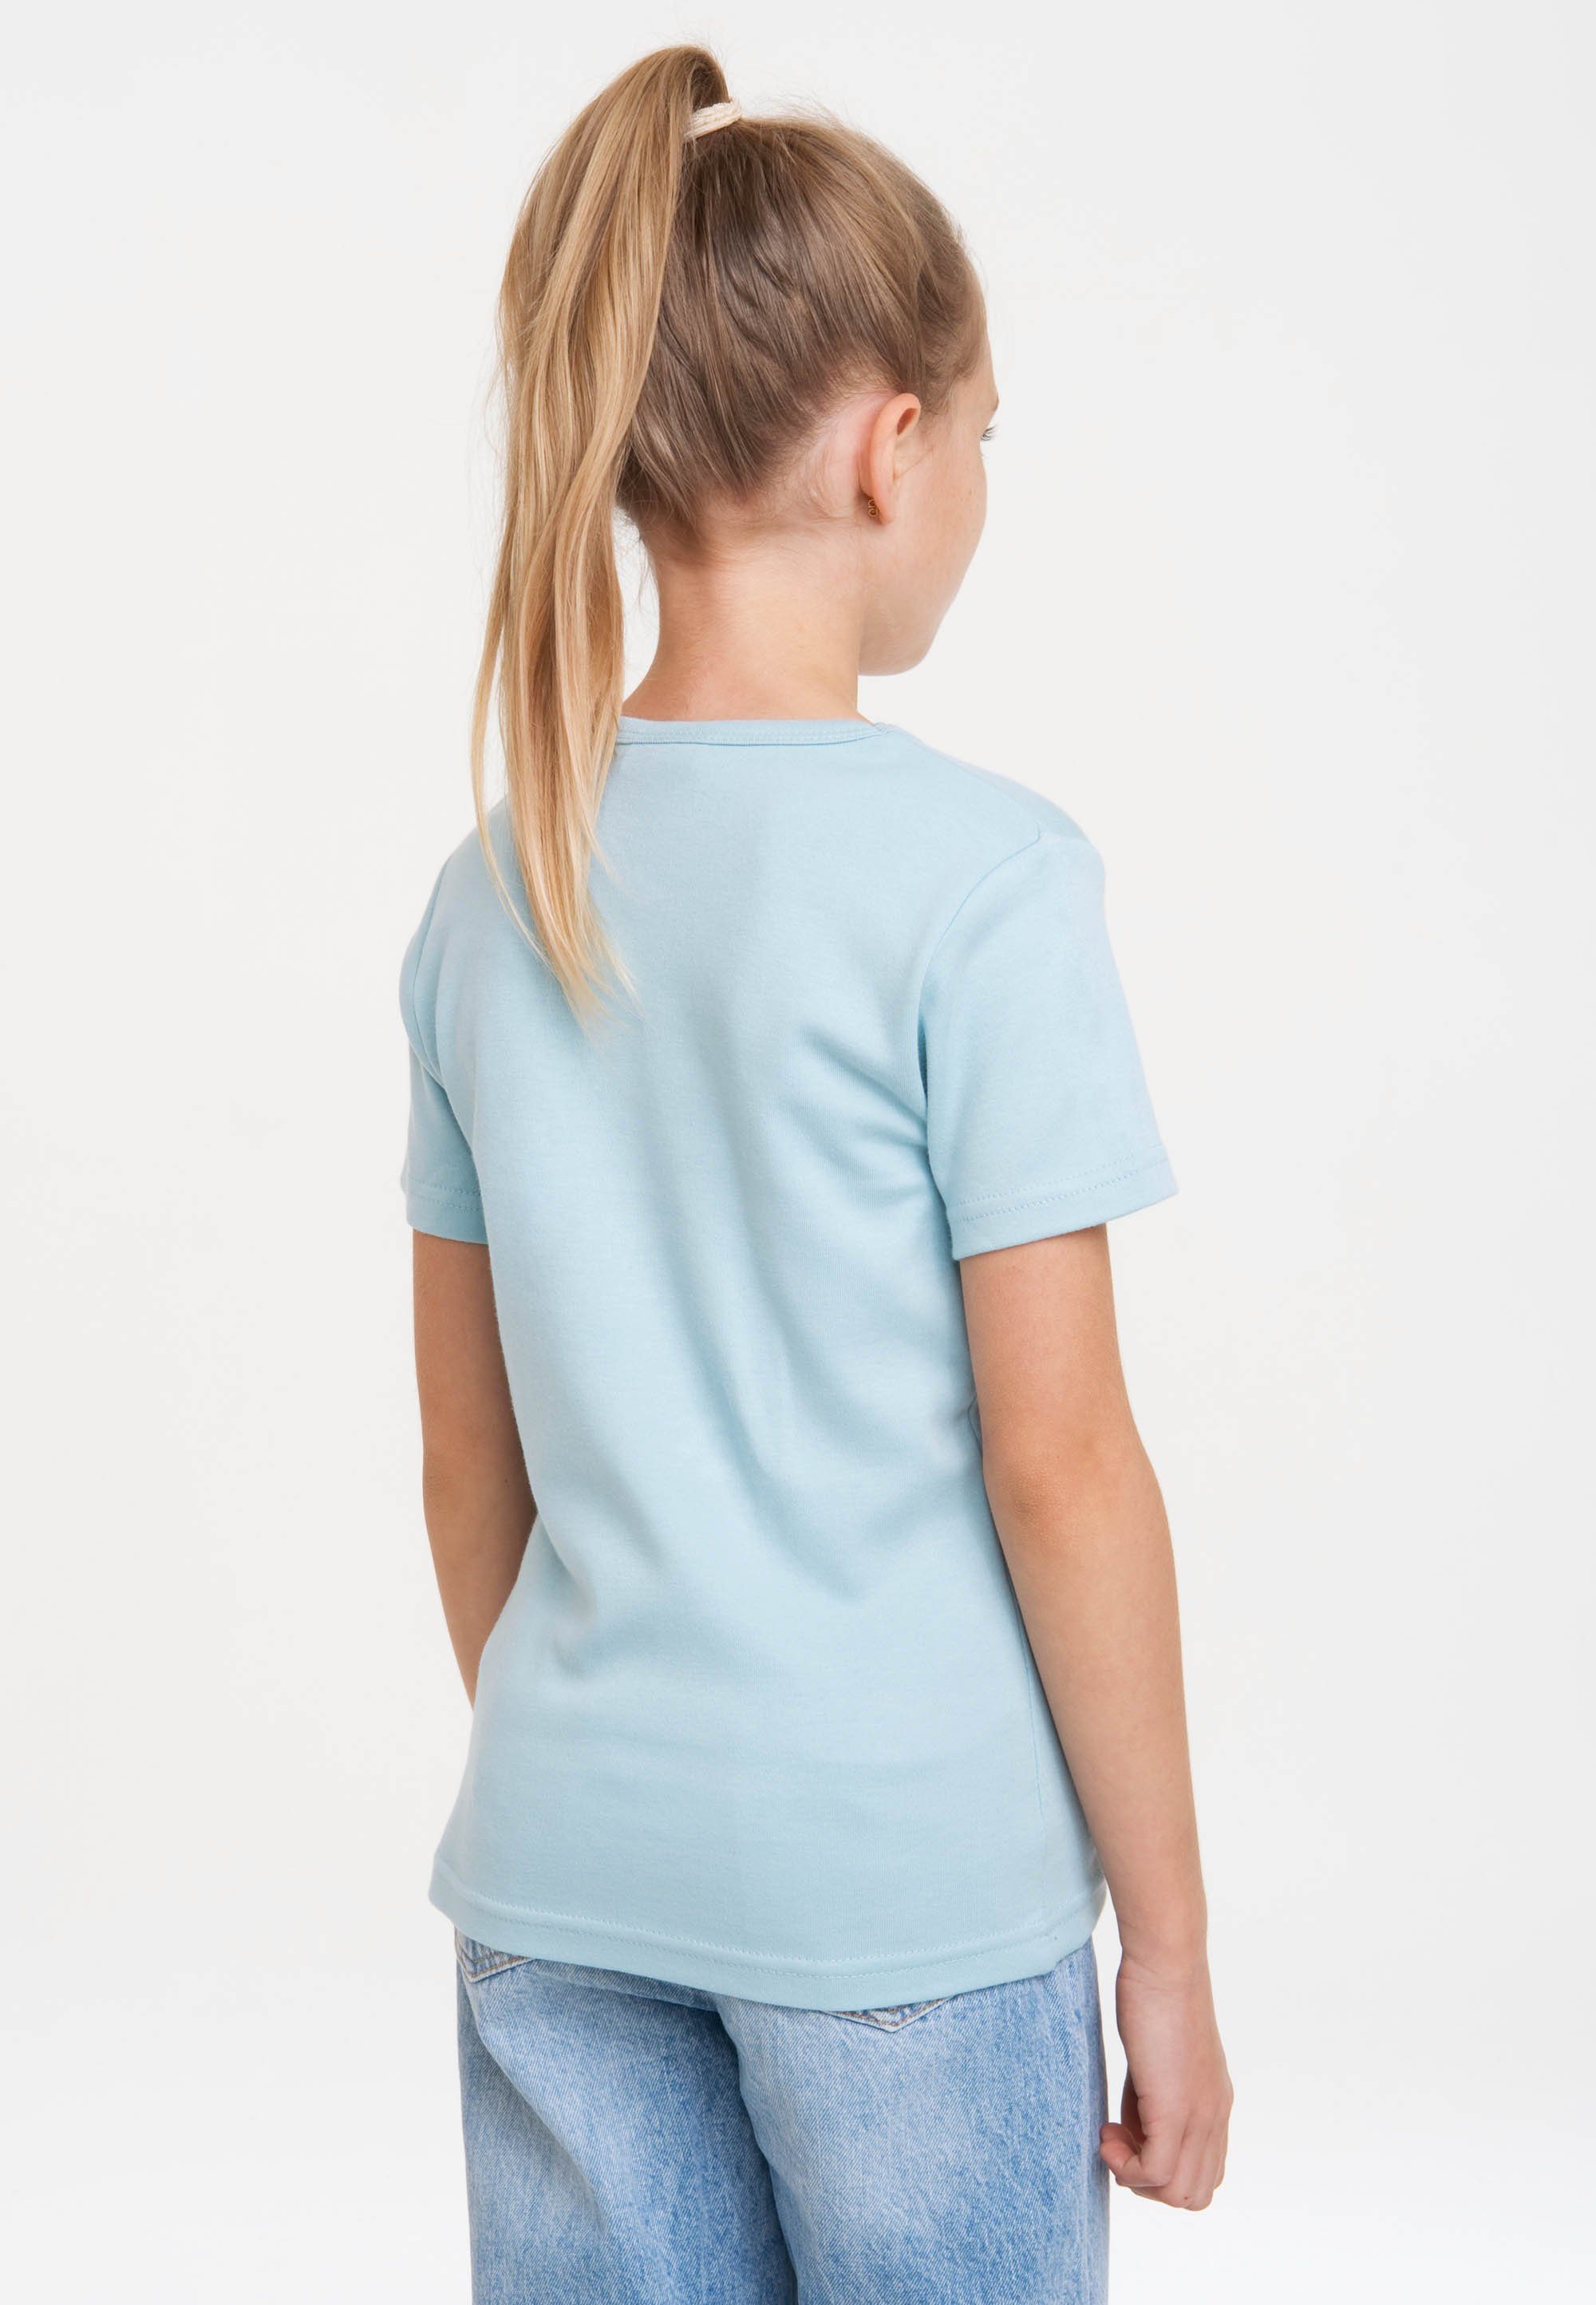 Die T-Shirt lizenziertem Originaldesign LOGOSHIRT Maus mit hellblau